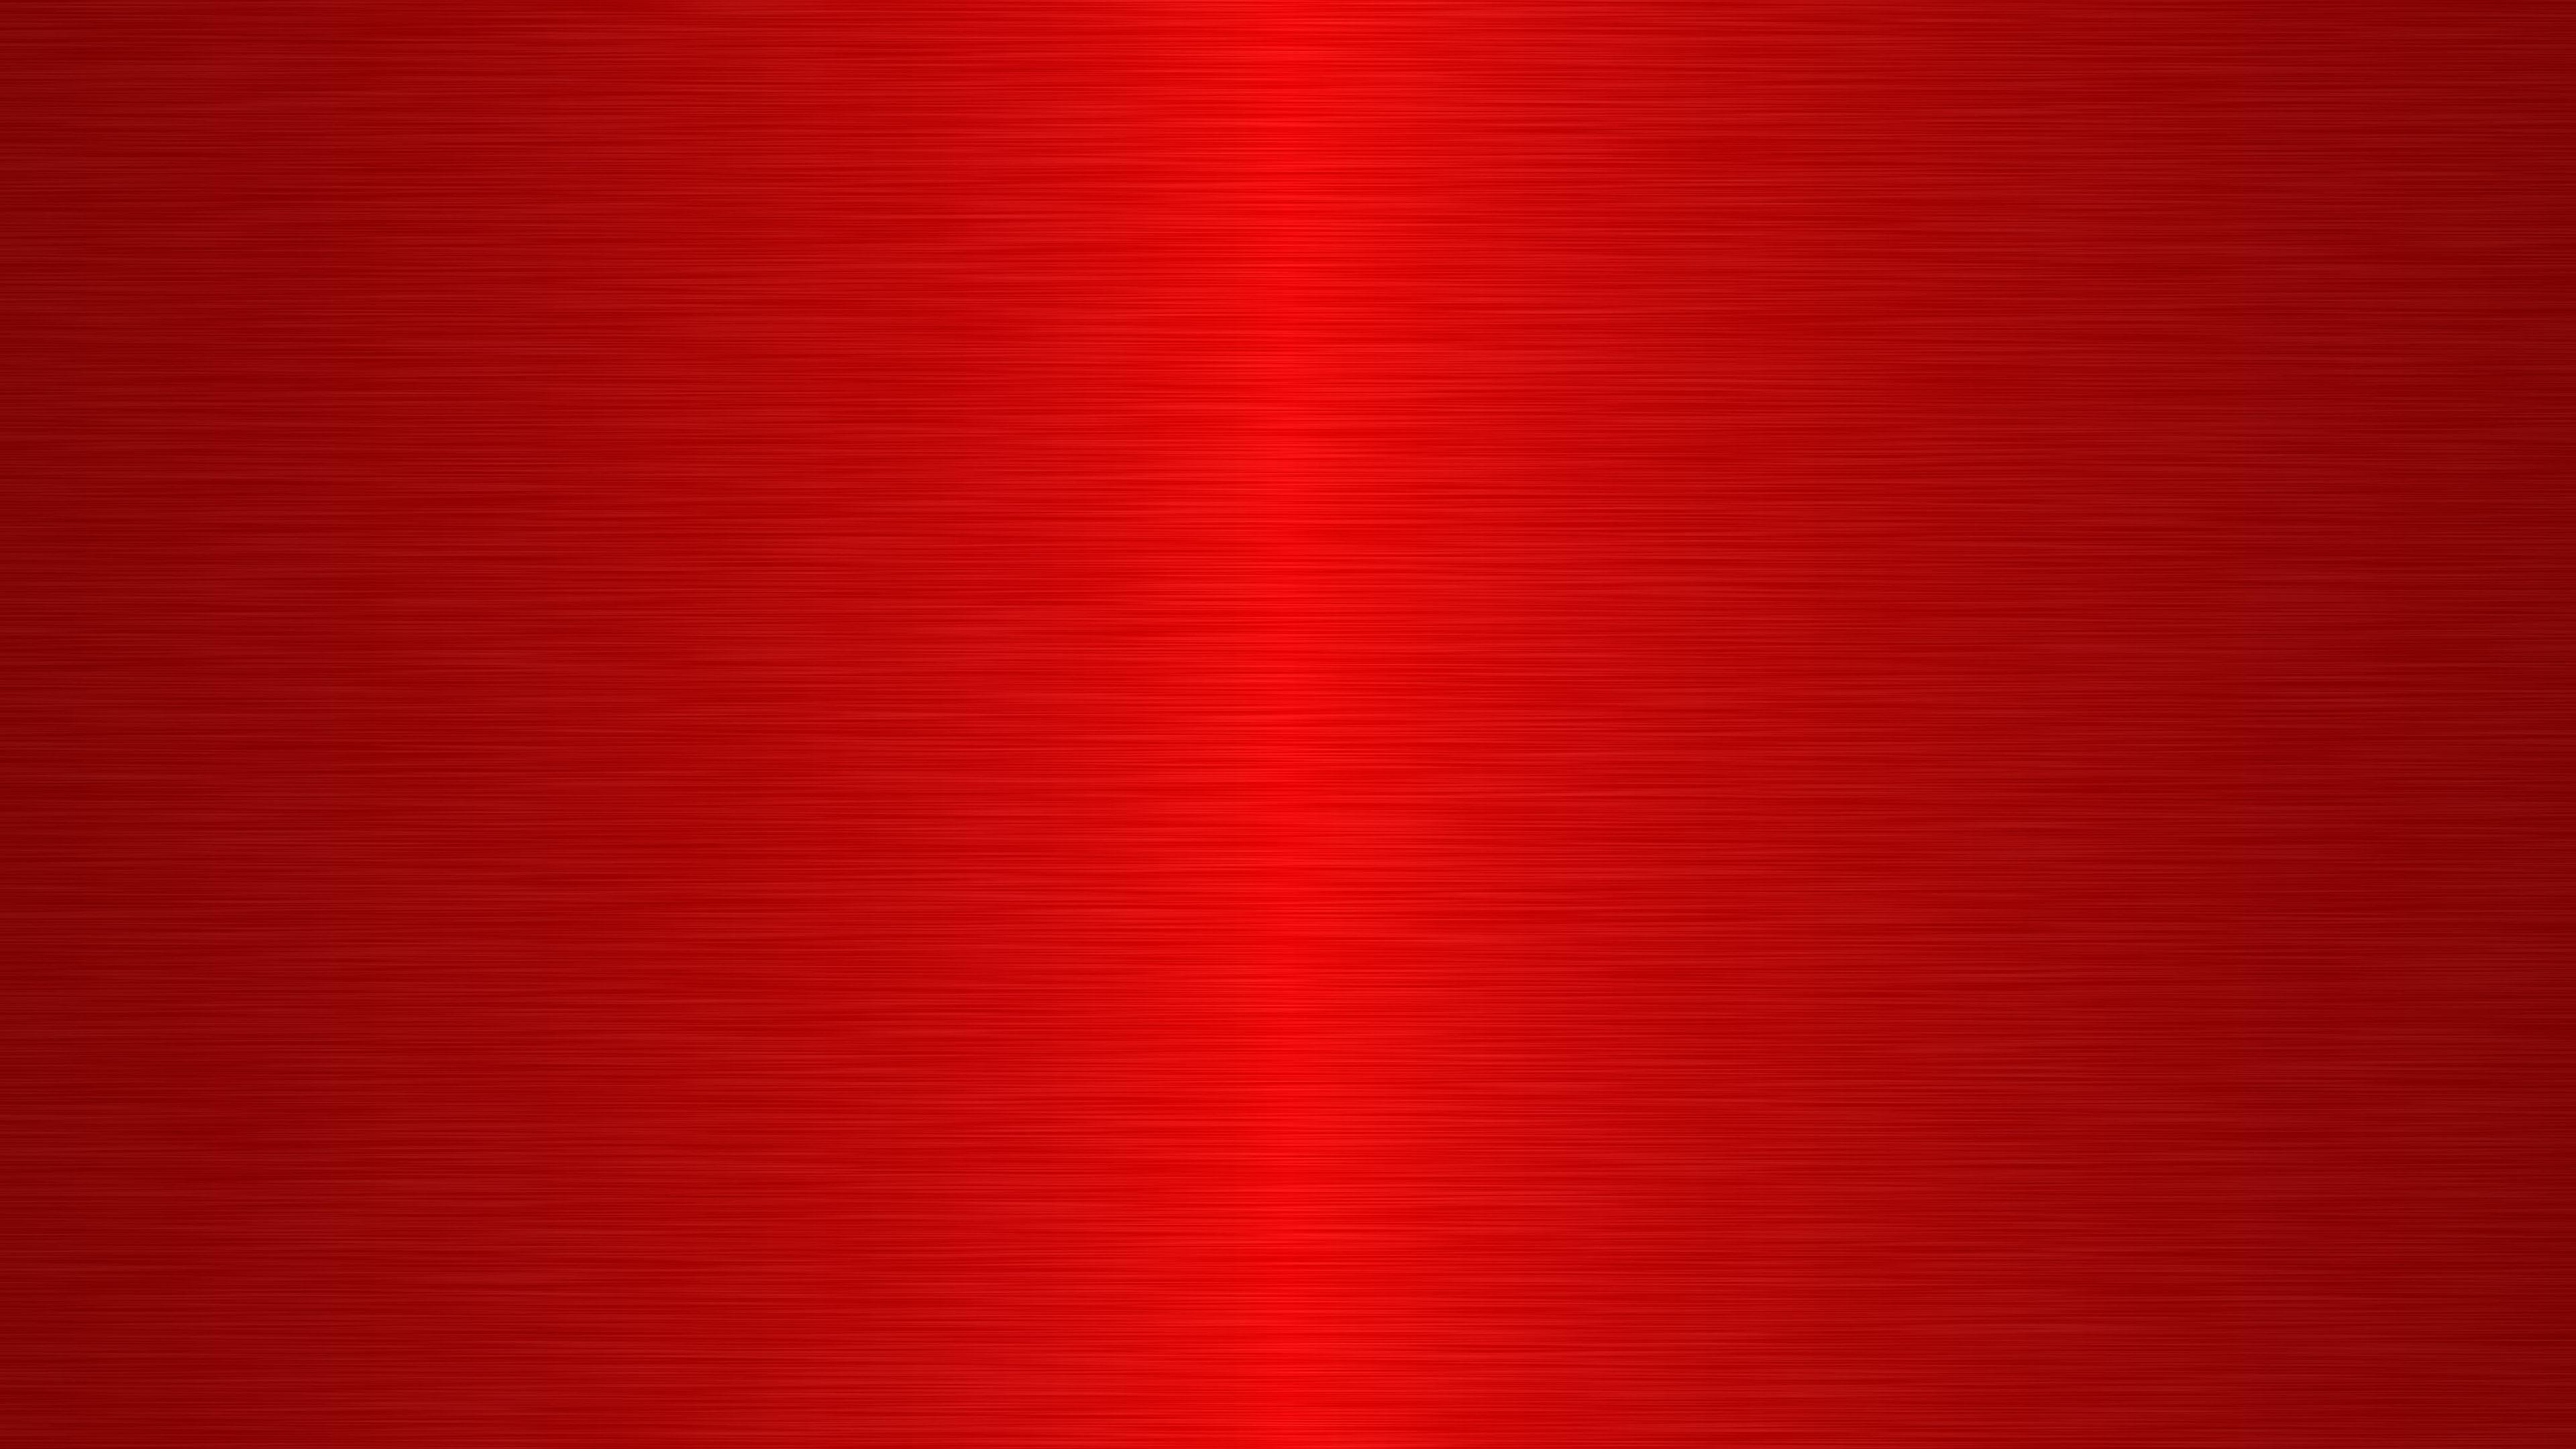 Hình nền Ban đầu Nhỏ Màu đỏ Tươi Chấm Bi Nền đơn Giản Nhỏ Tươi Lý Lịch Background Vector để tải xuống miễn phí Pngtree